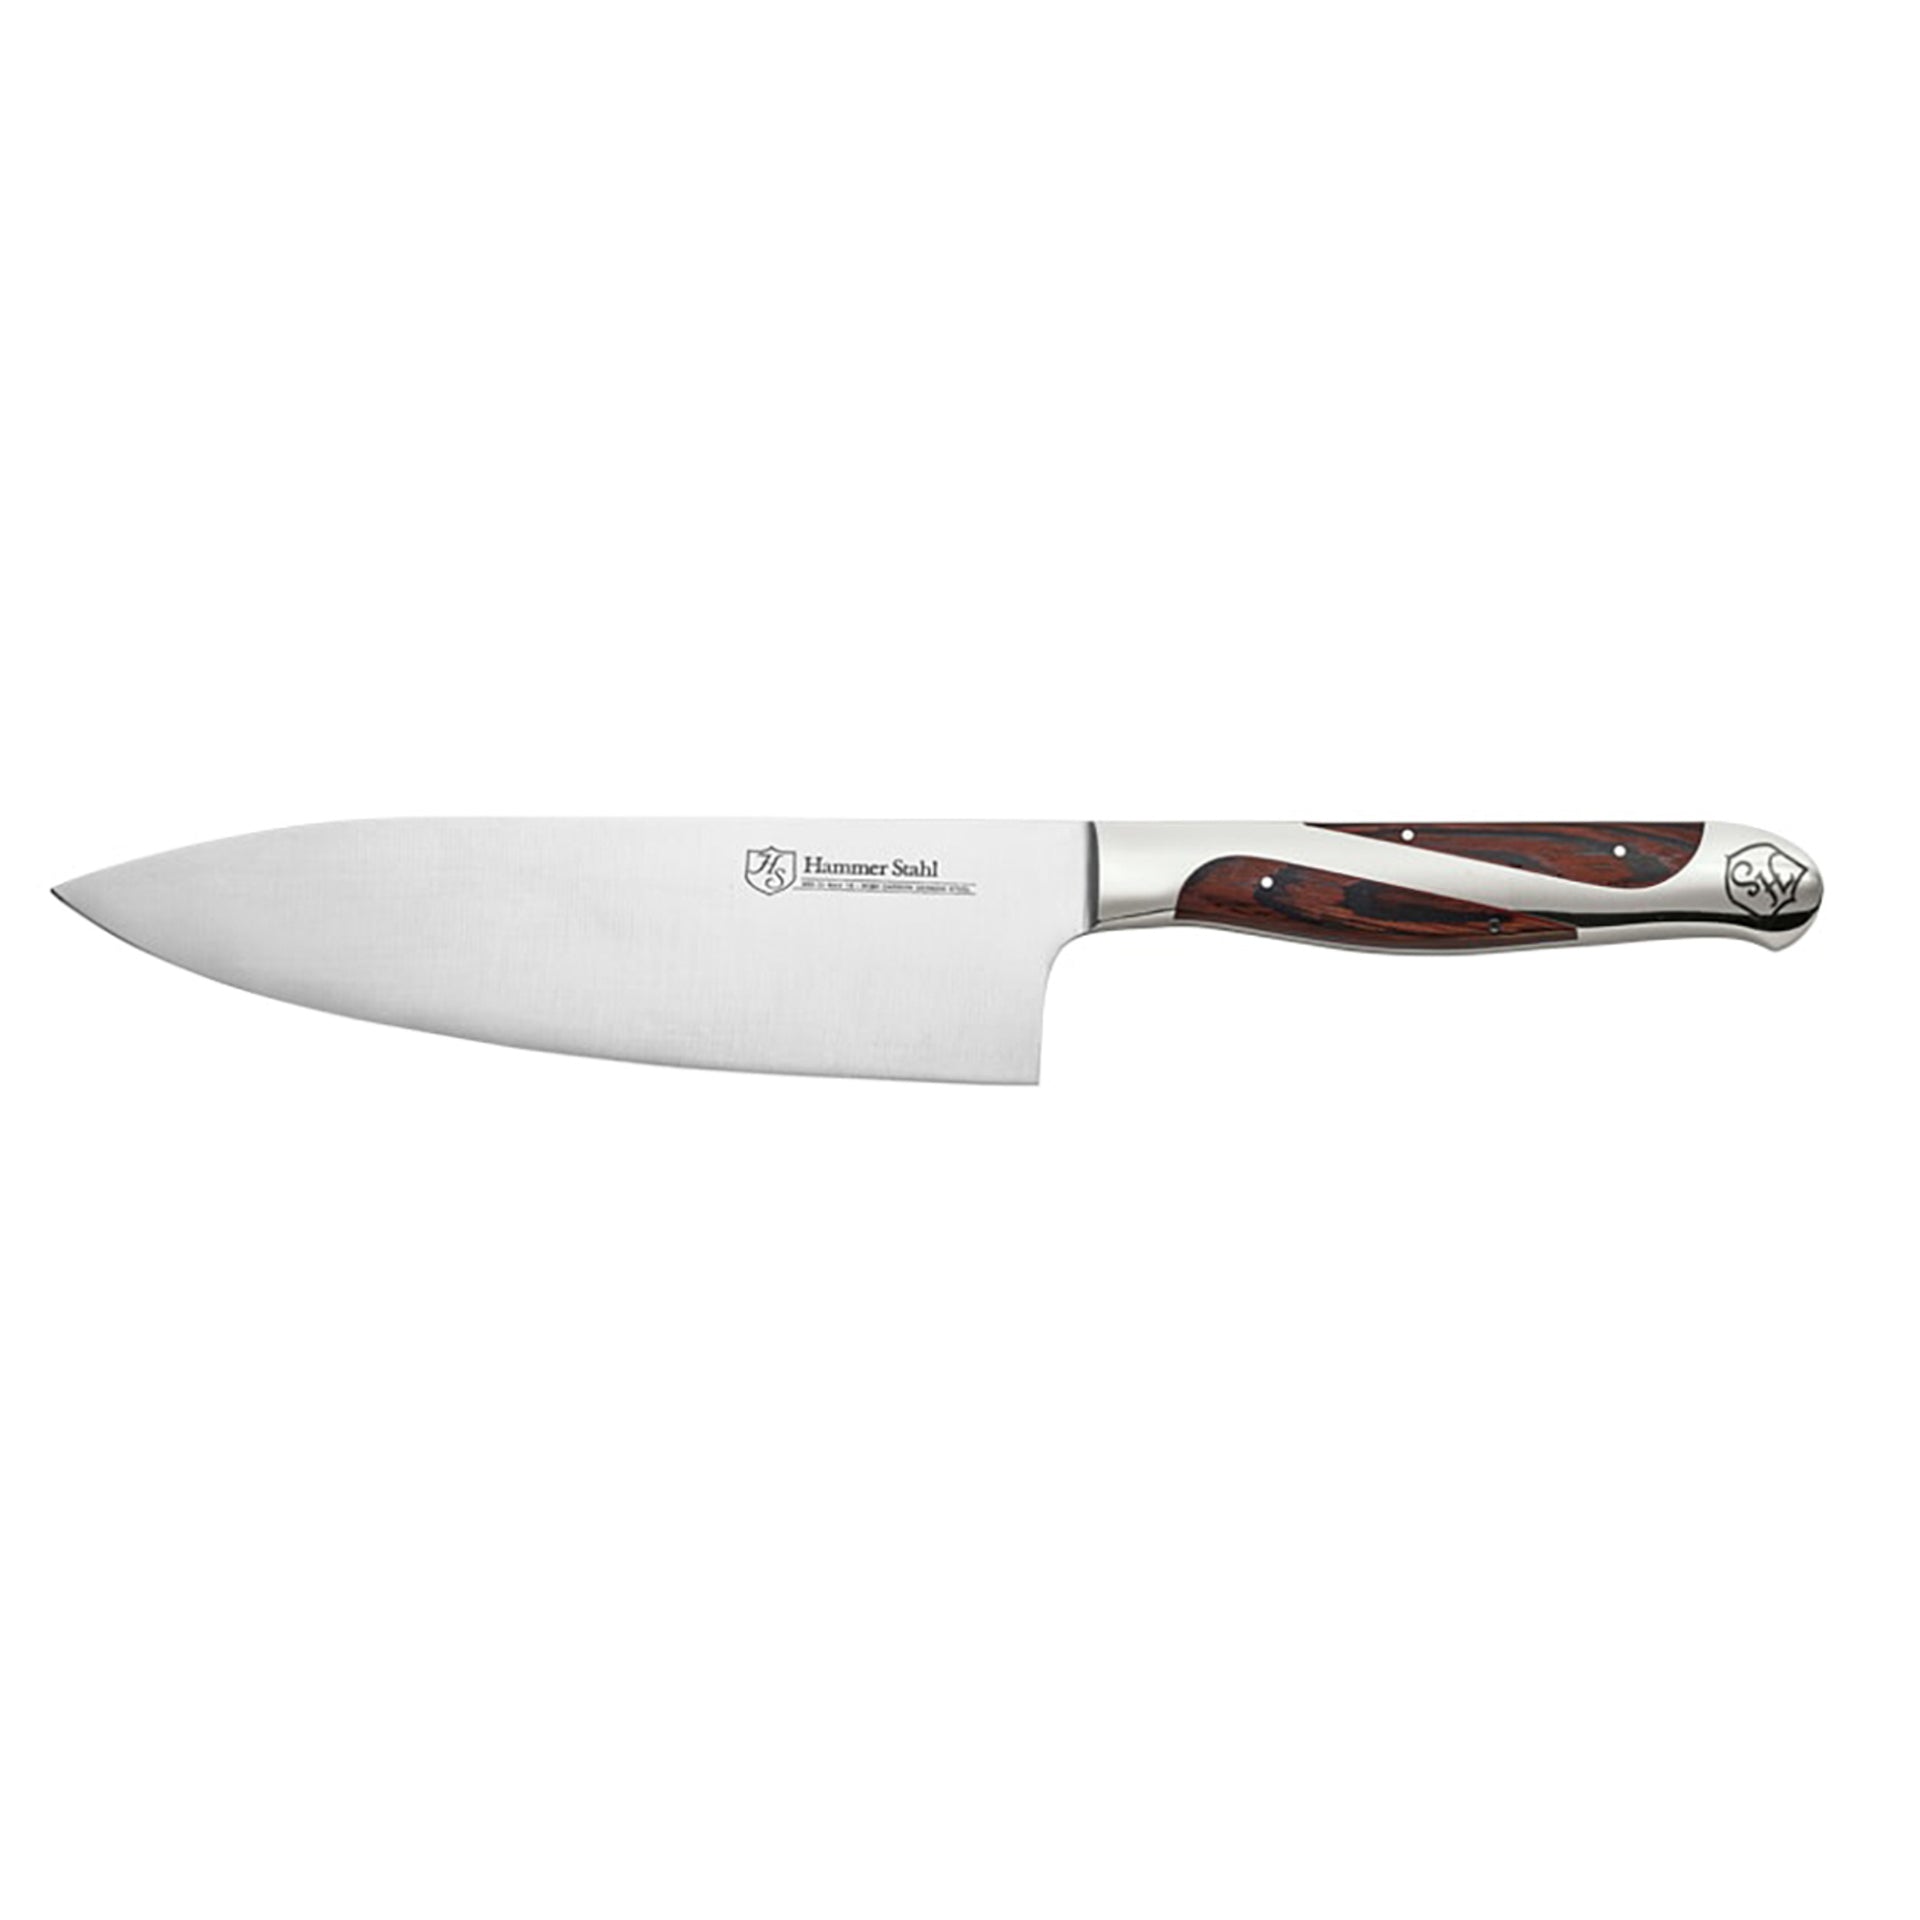 https://www.jkadams.com/cdn/shop/files/jk-adams-hammer-stahl-6-inch-chefs-knife.jpg?v=1684784994&width=1920